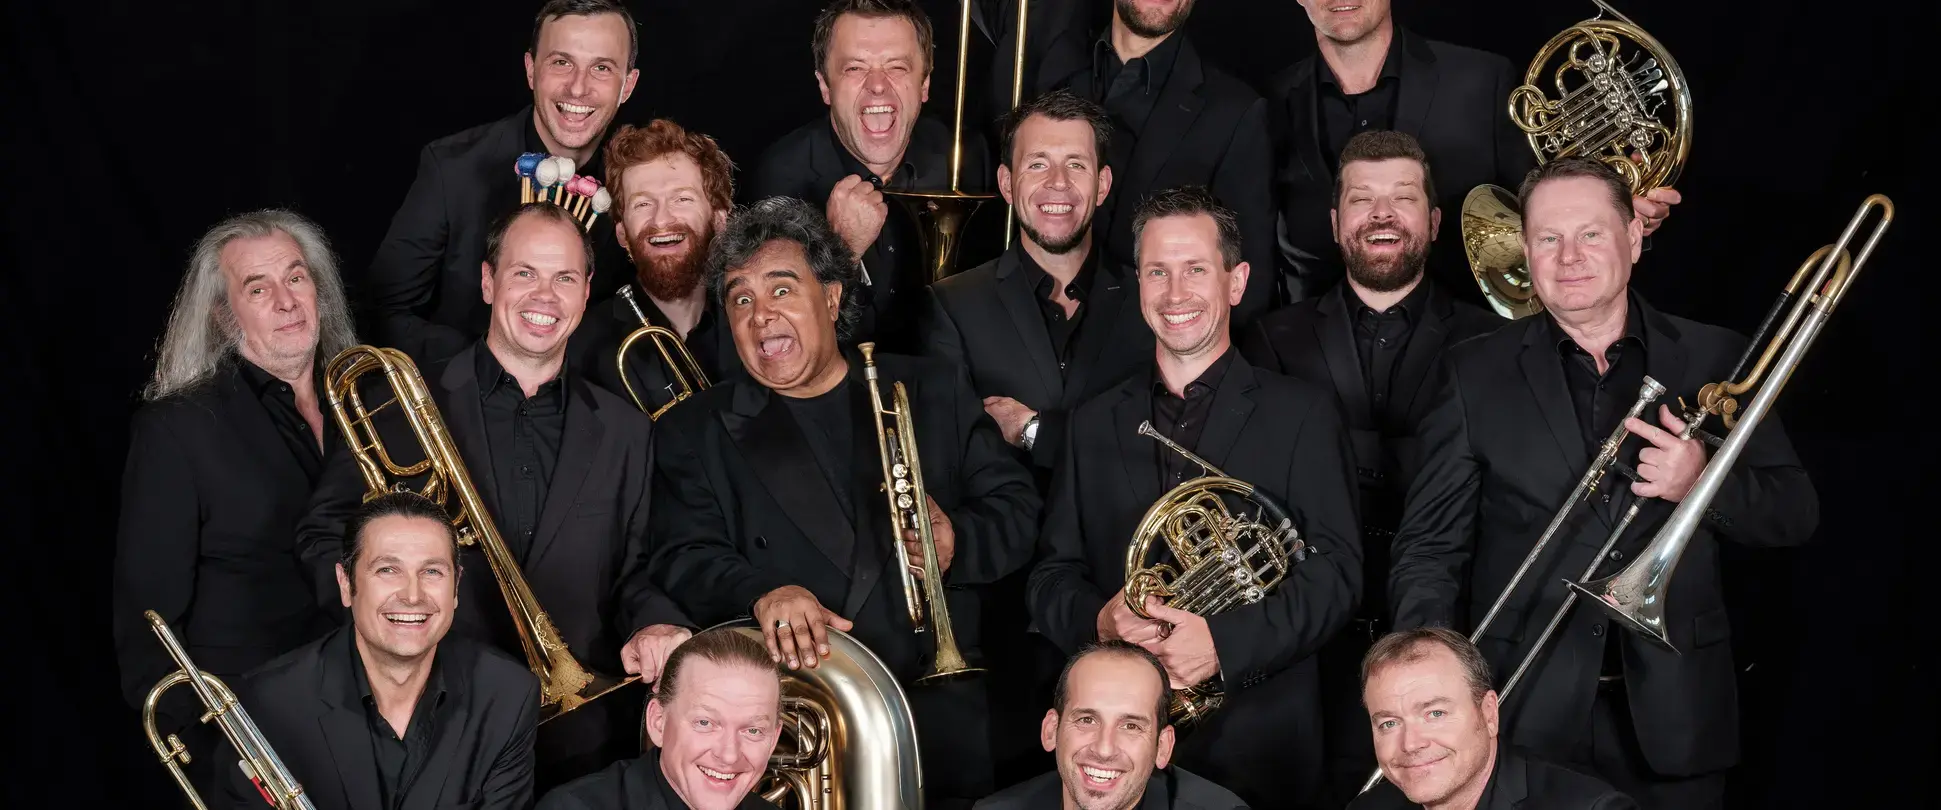 Gruppenfoto der Musikband Pro Brass.